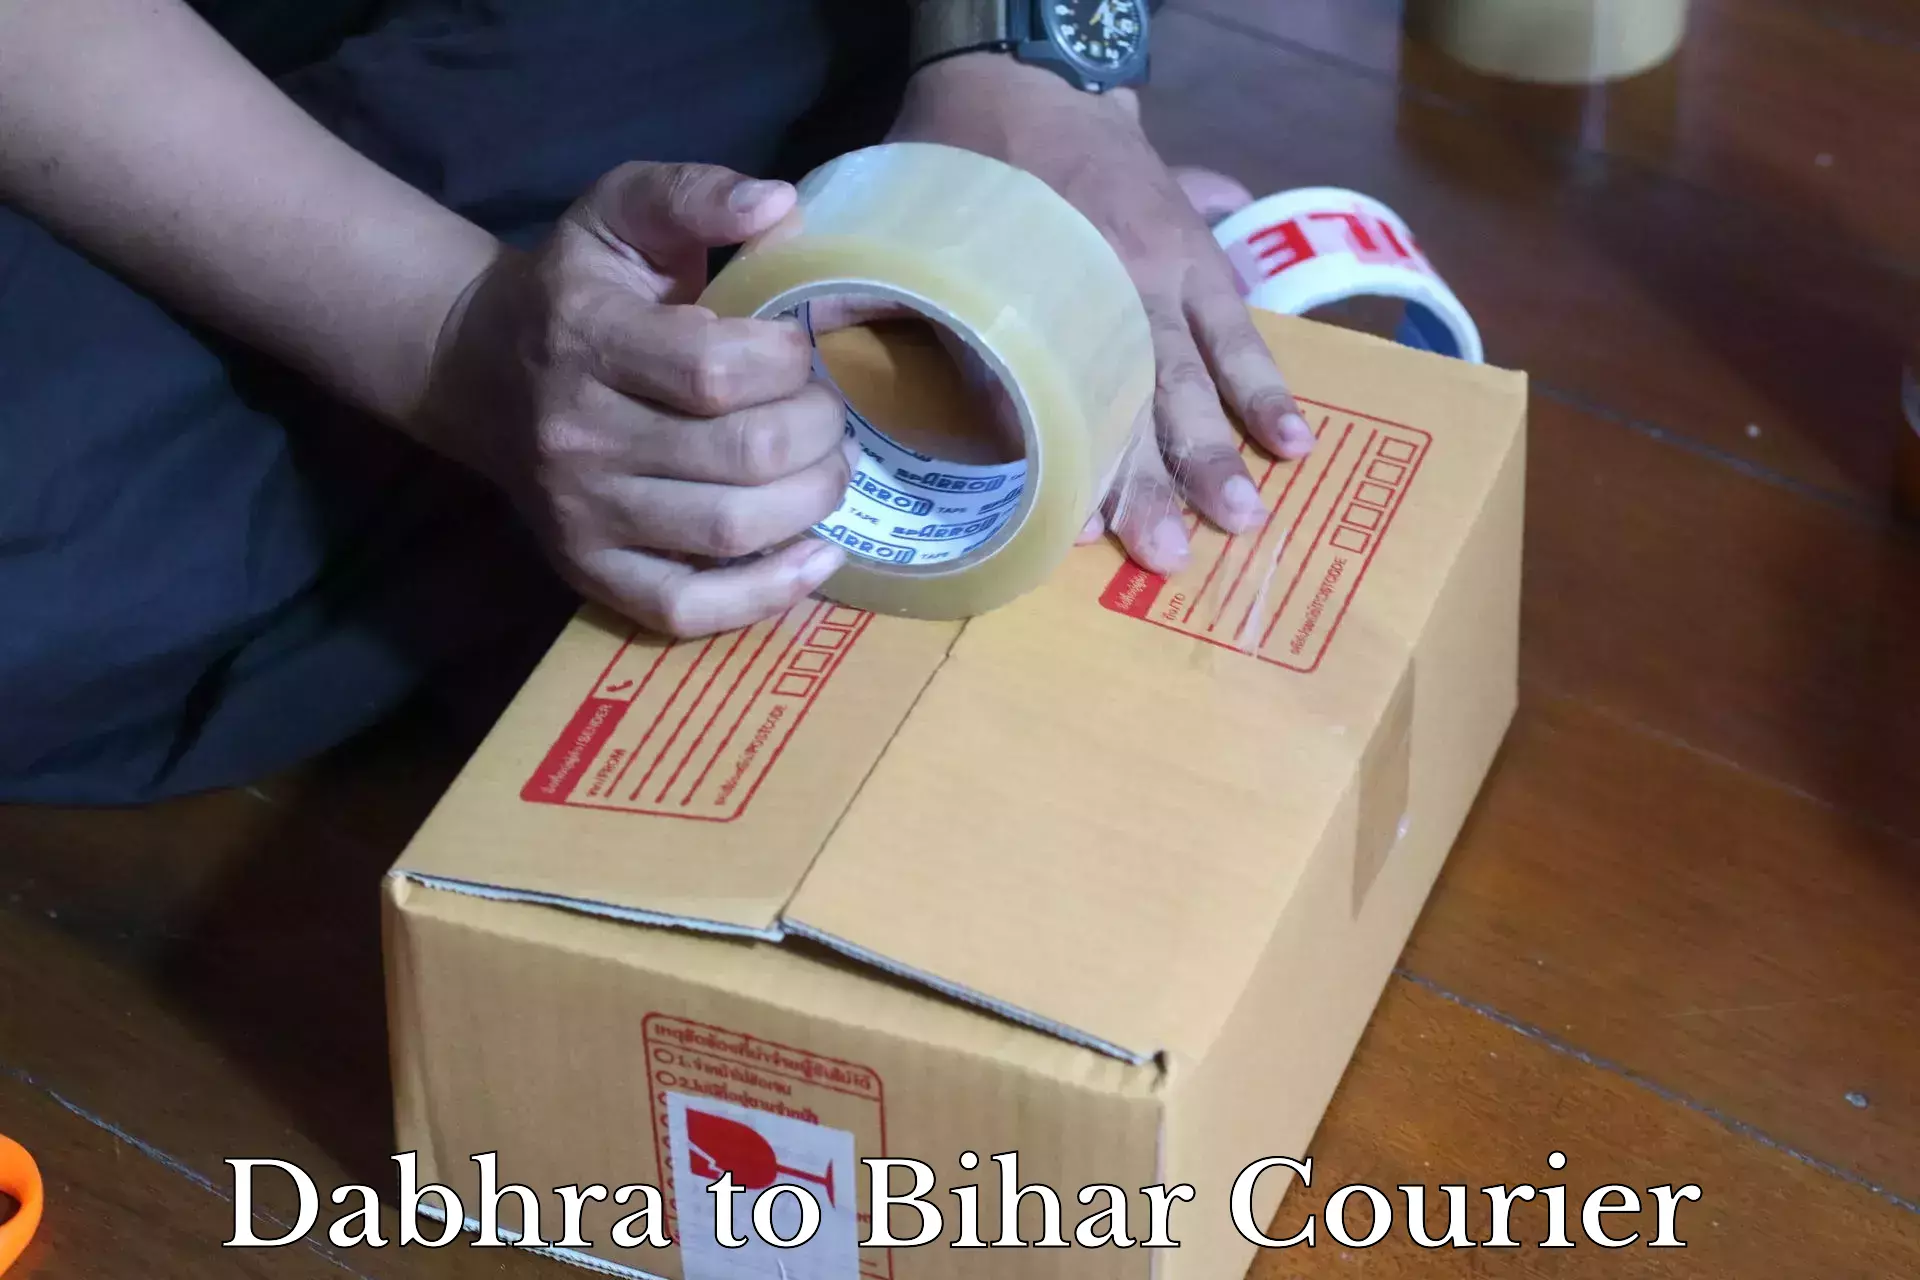 Door-to-door freight service Dabhra to Bihar